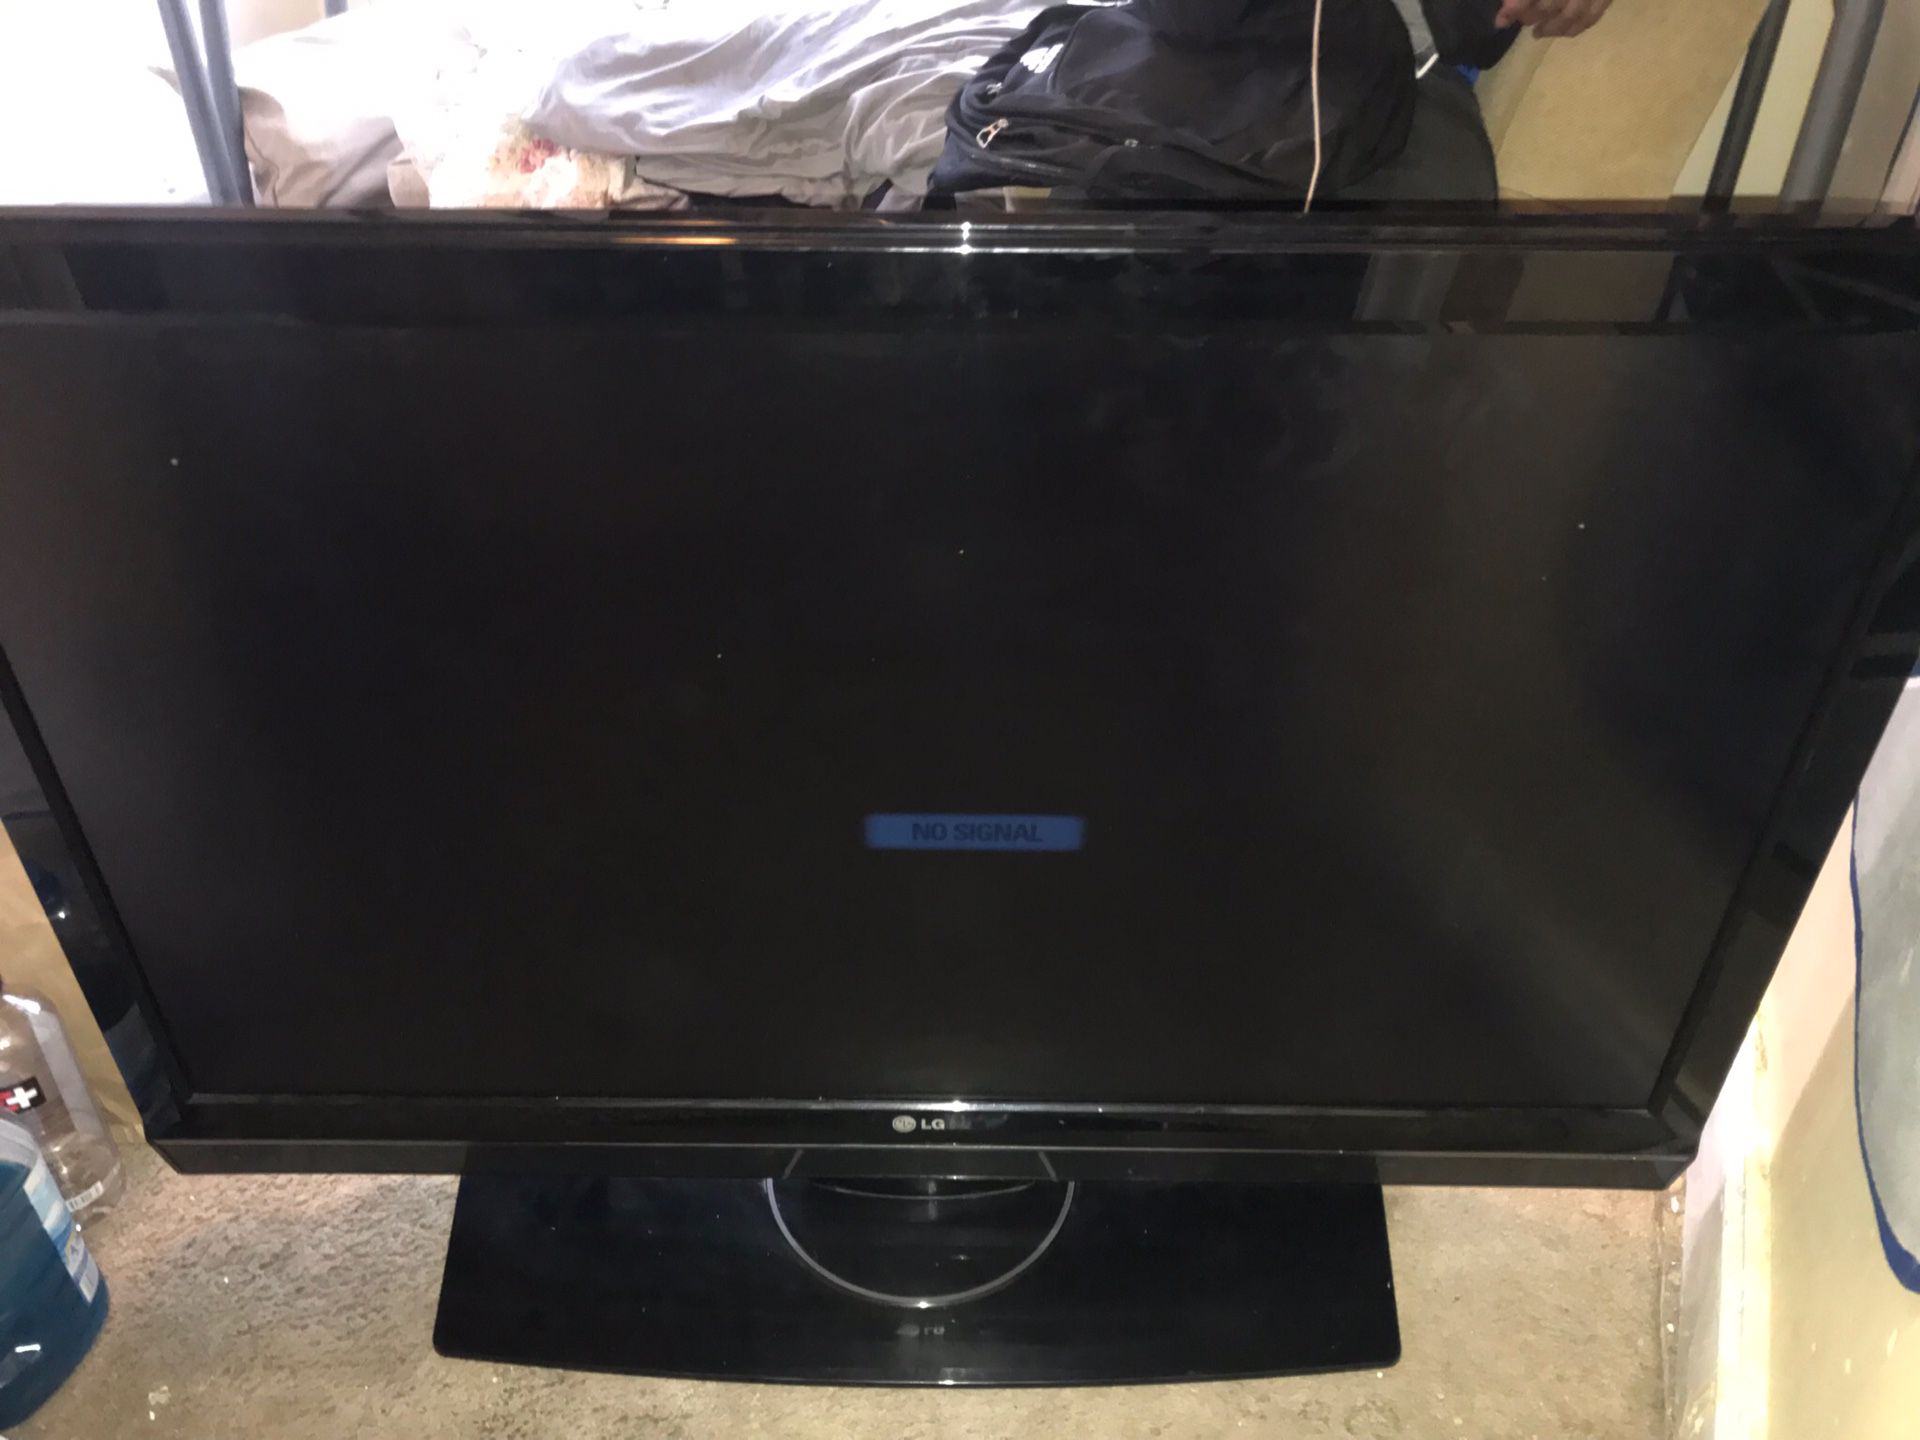 40” inch LG TV